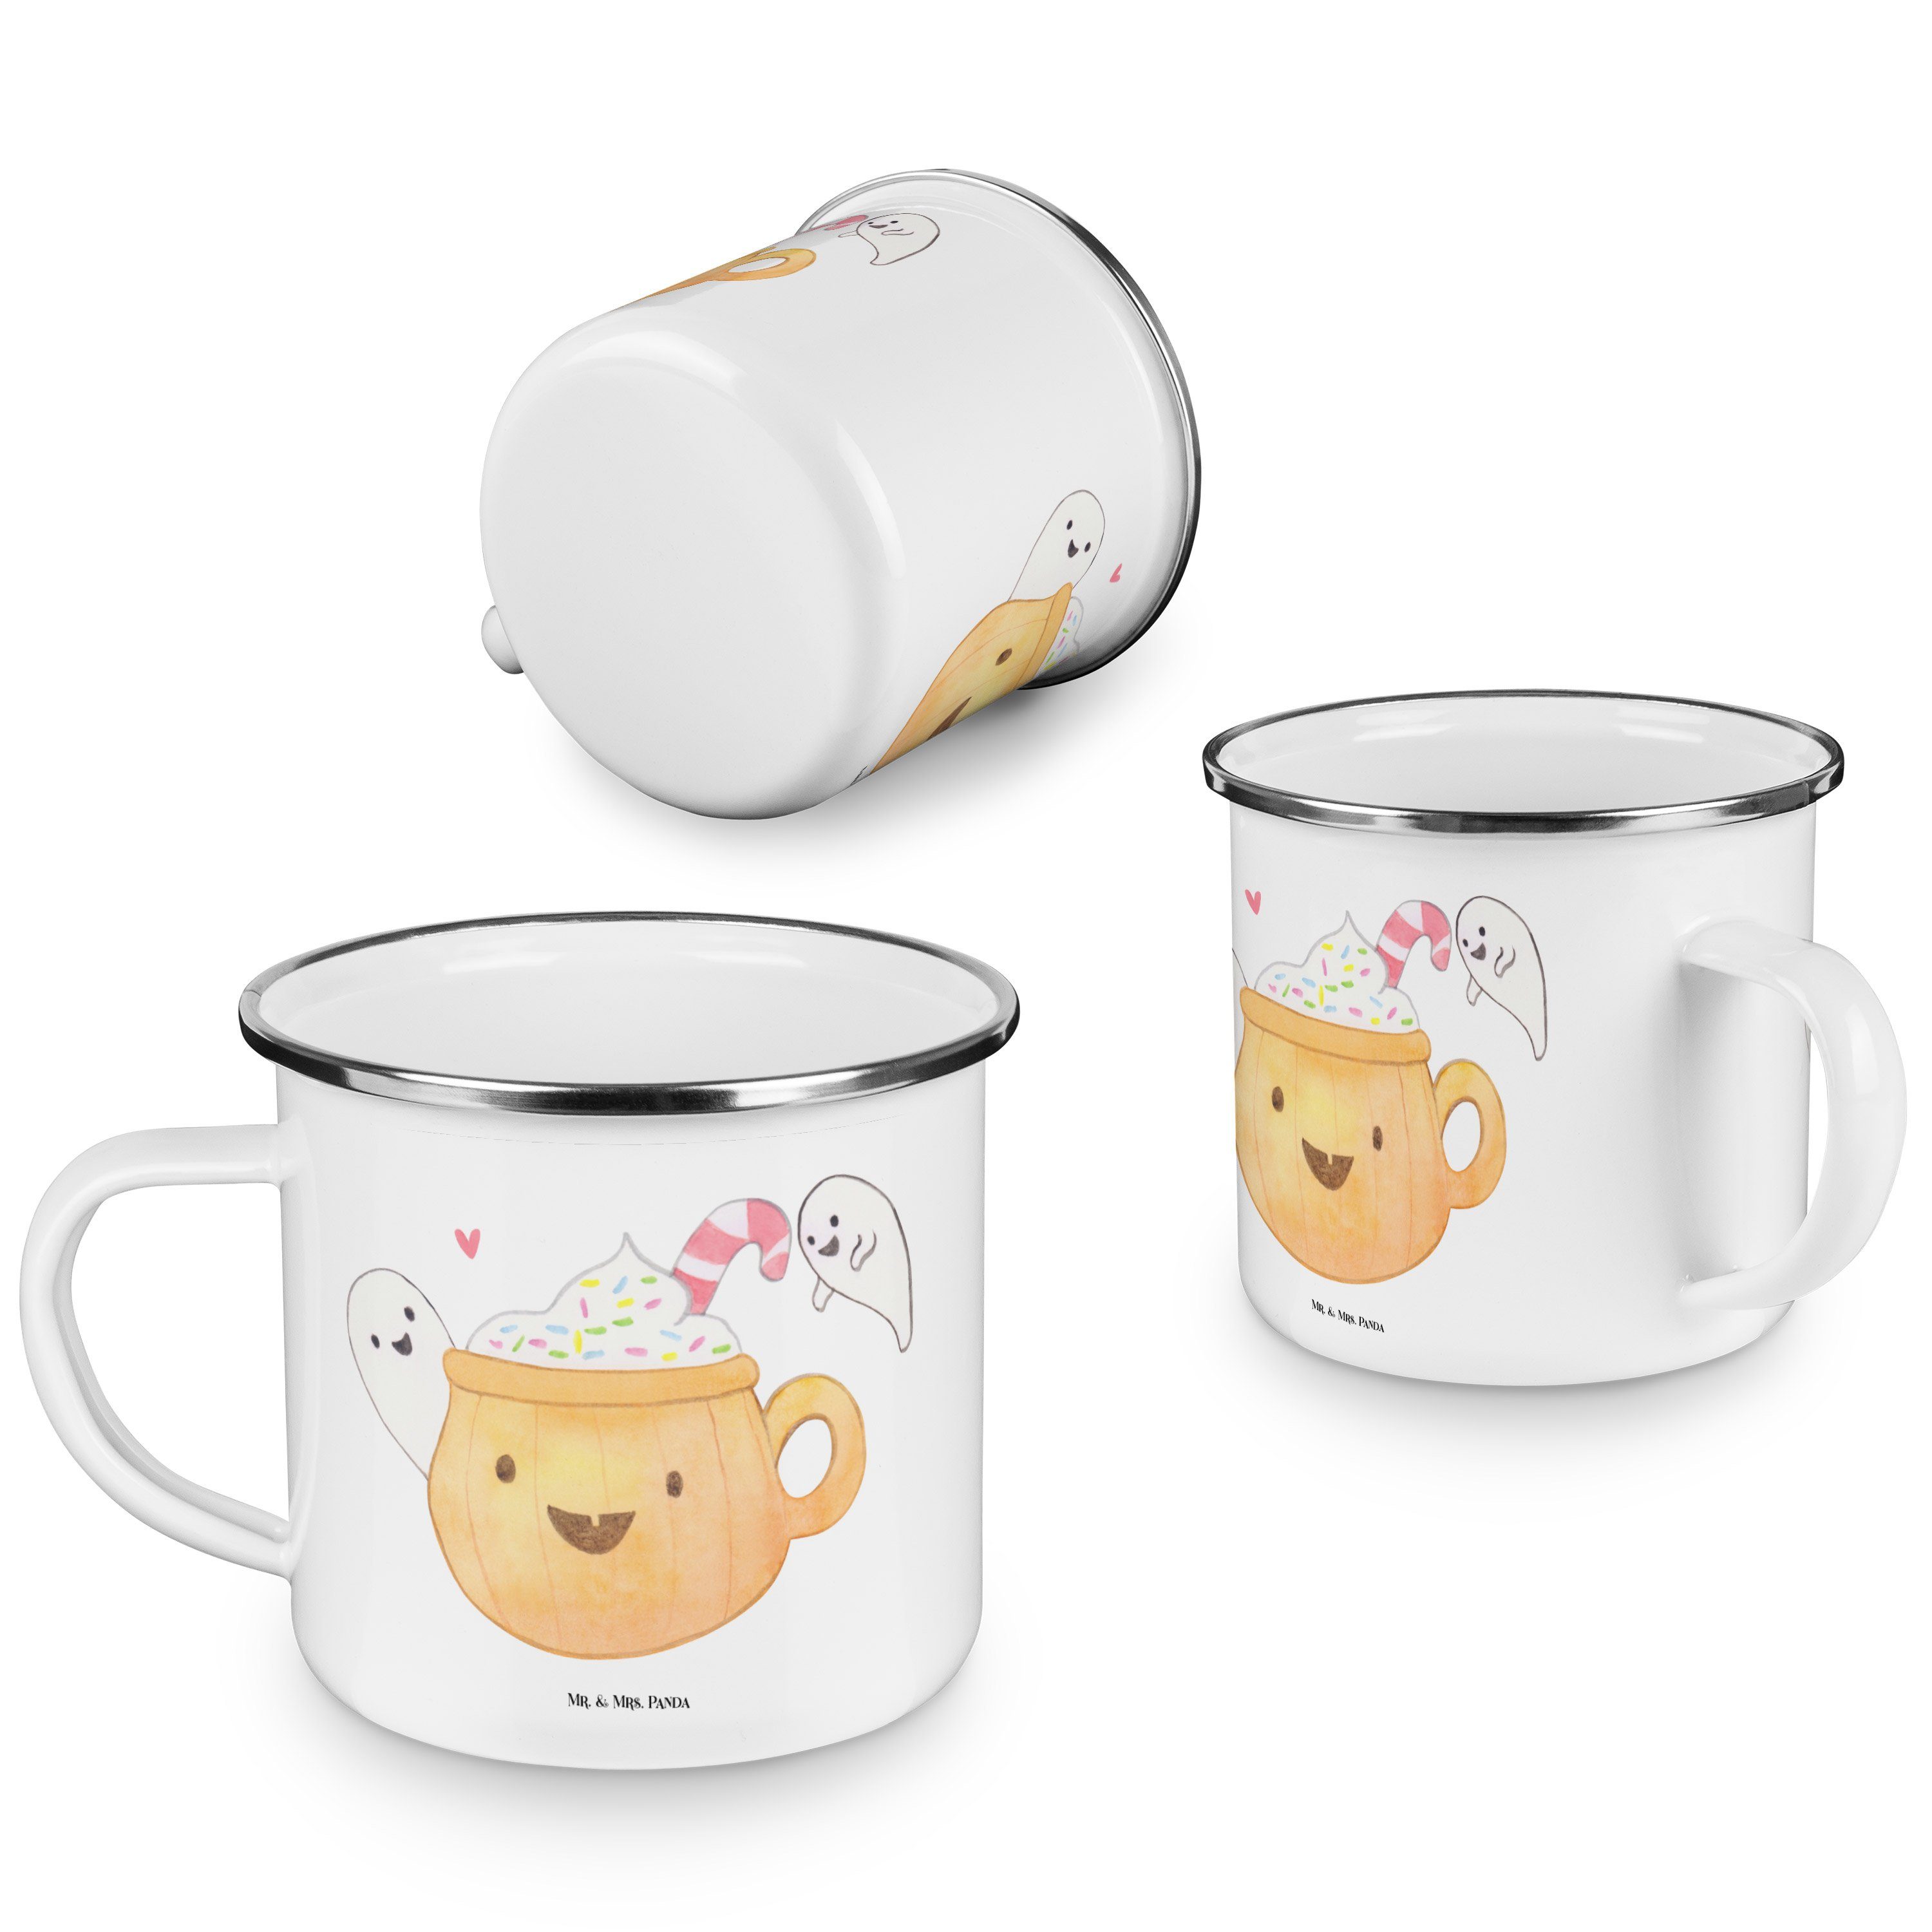 Mr. & Mrs. Panda Kaffee Becher Dekoration, Geschenk, - Emaille Trinkbecher, Gespenst Weiß Emaille 